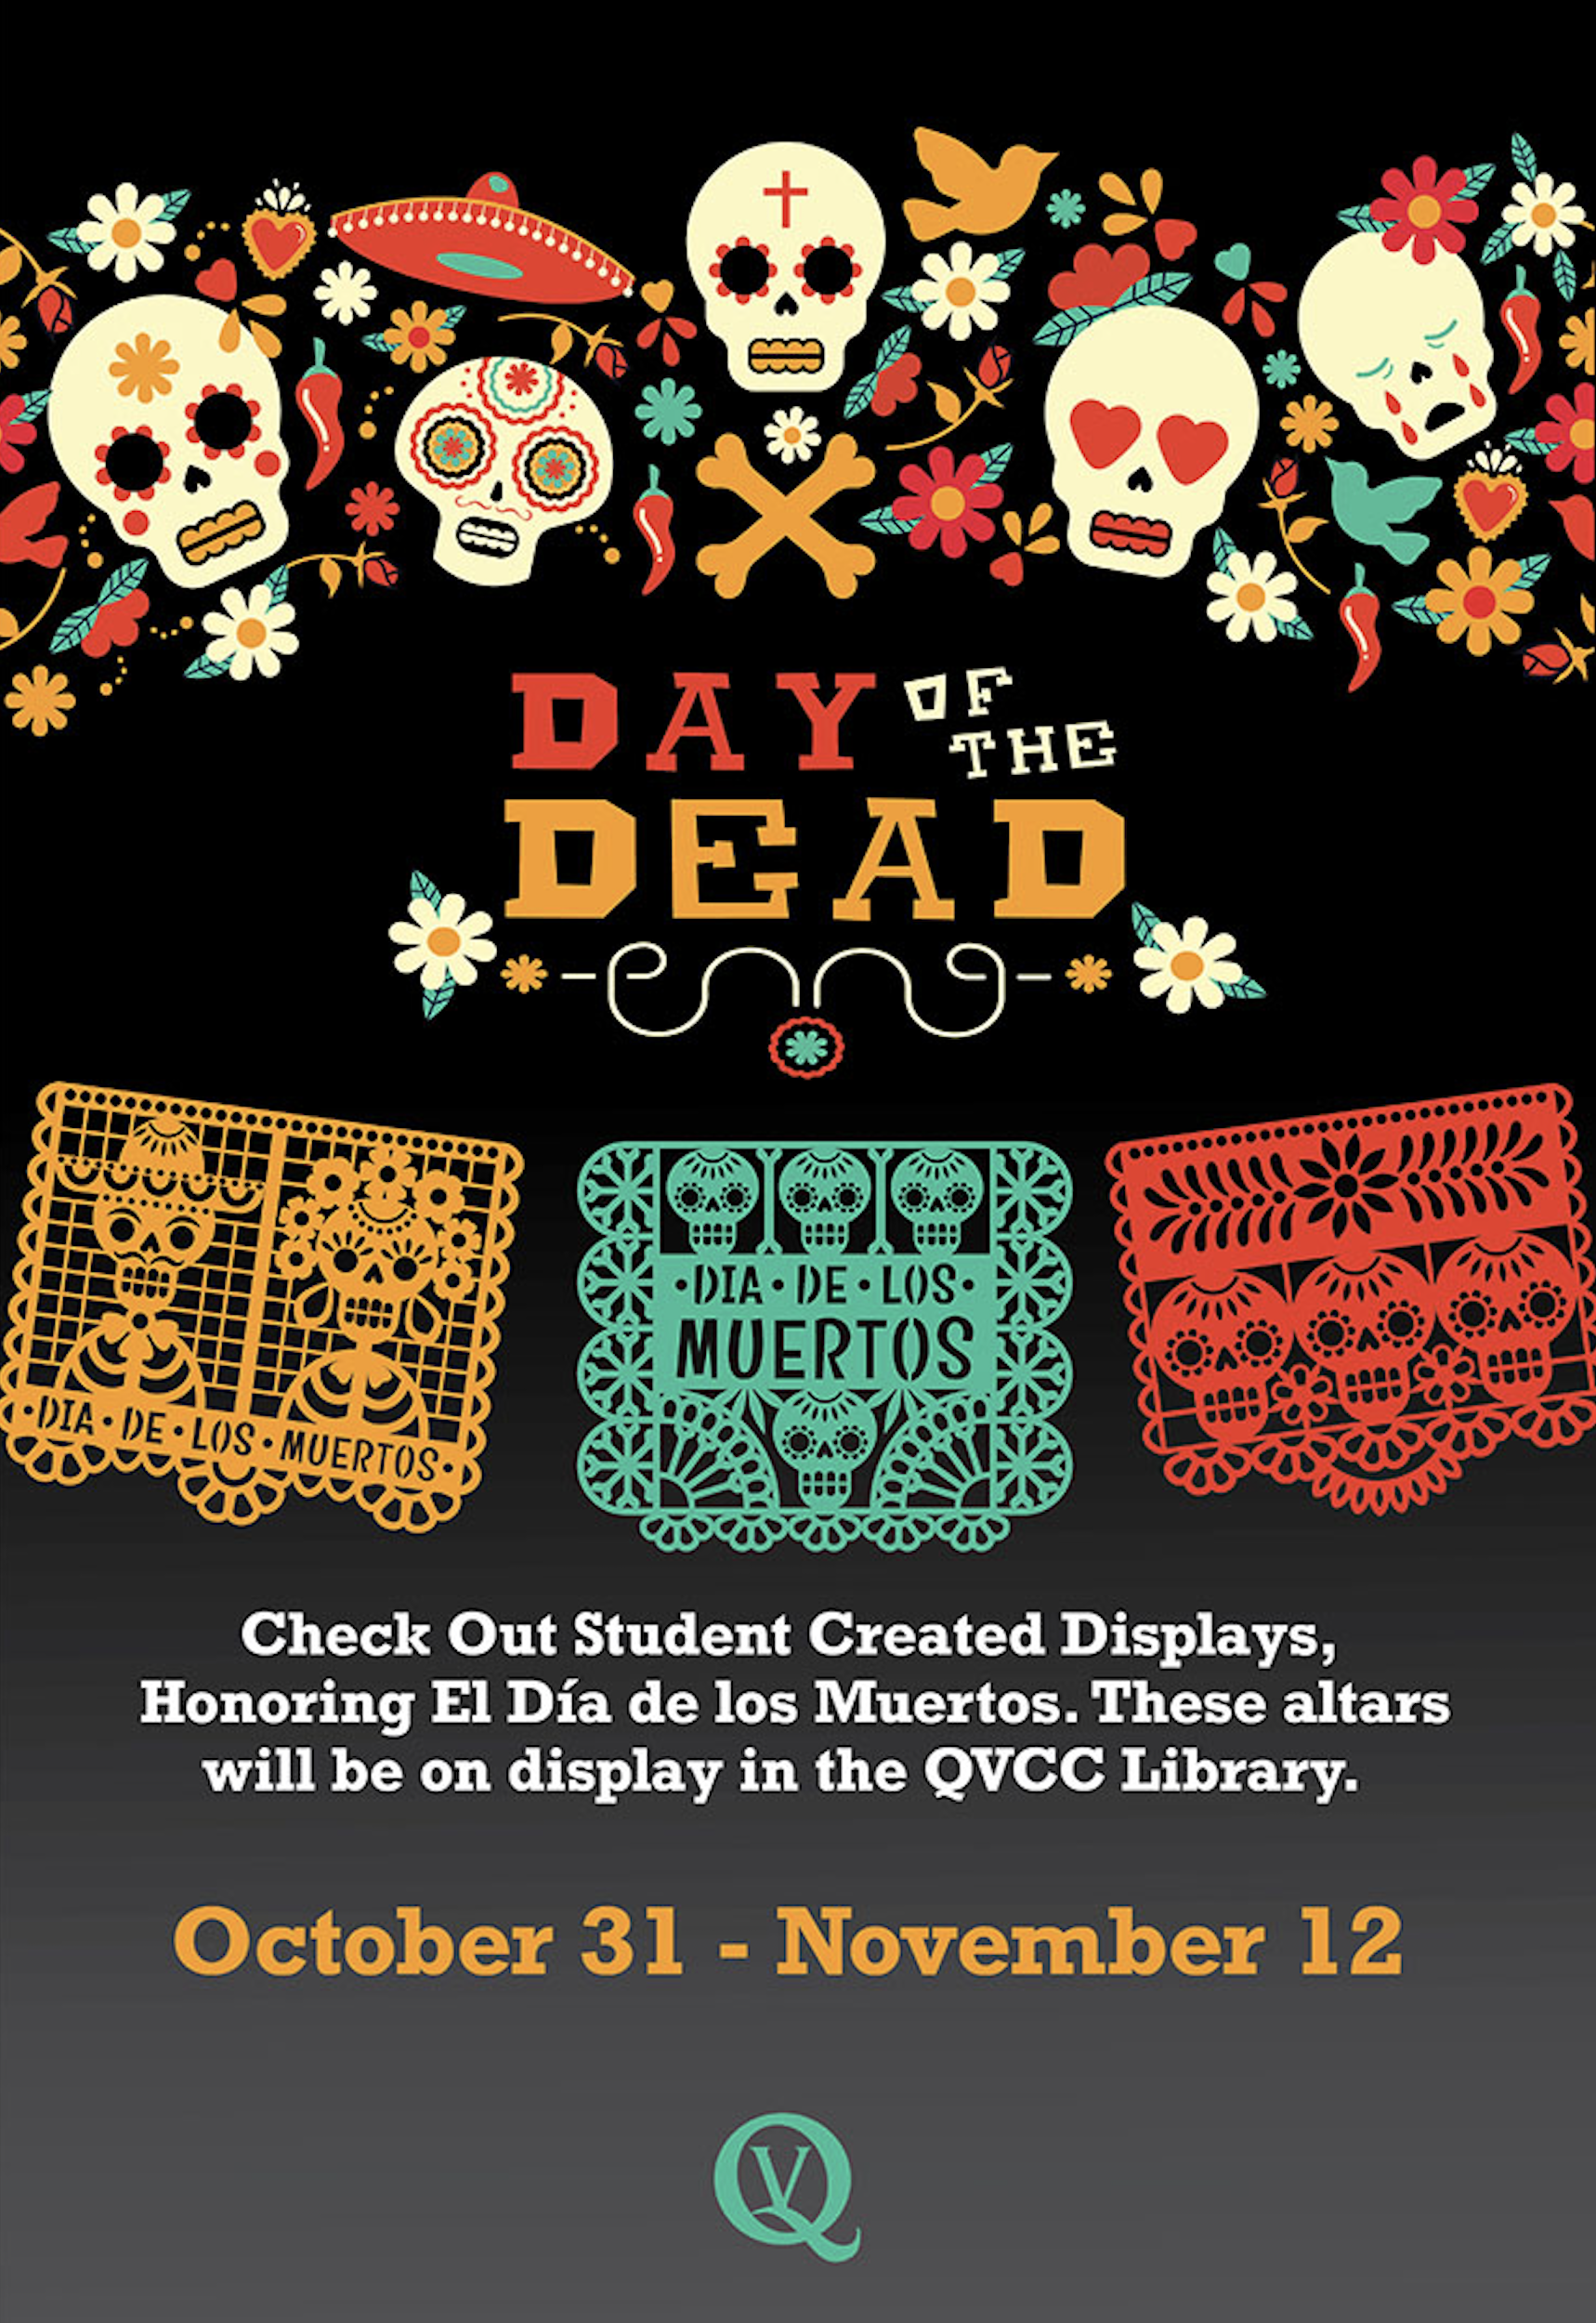 El Día de los Muertos (The Day of the Dead) Displays